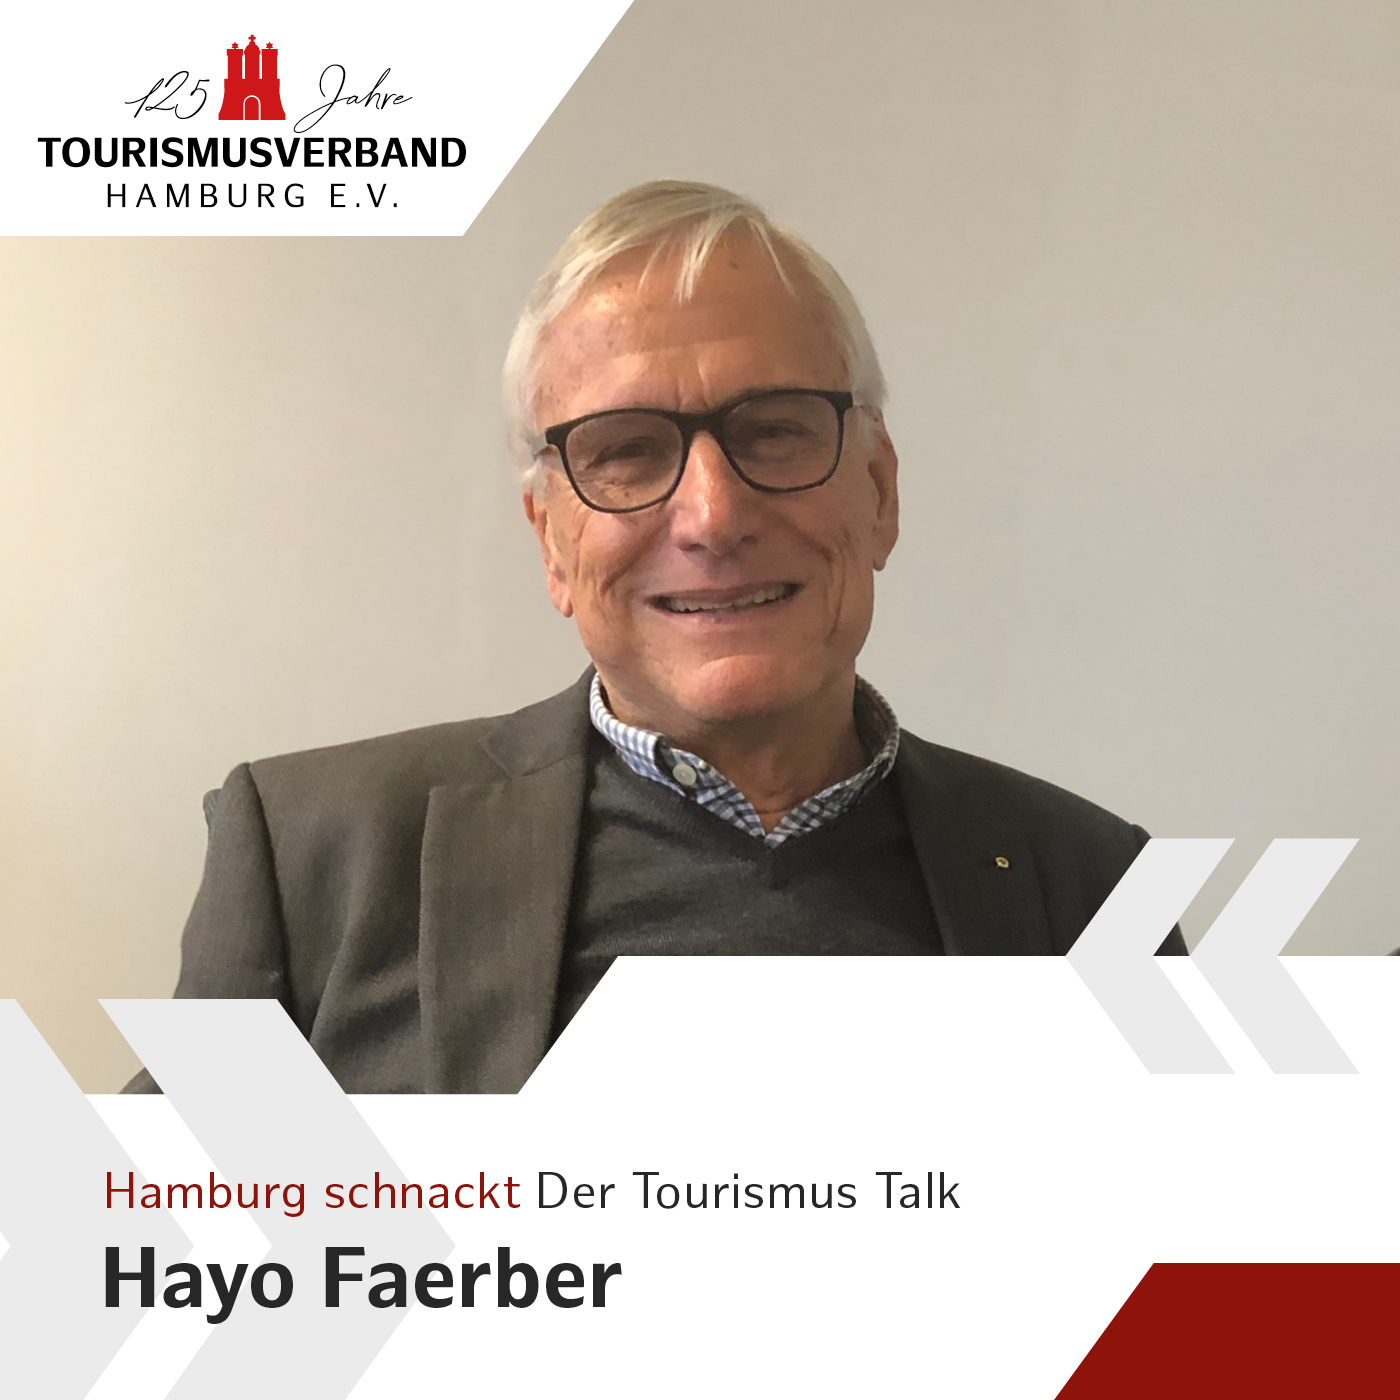 Hamburg schnackt mit Hayo Faerber